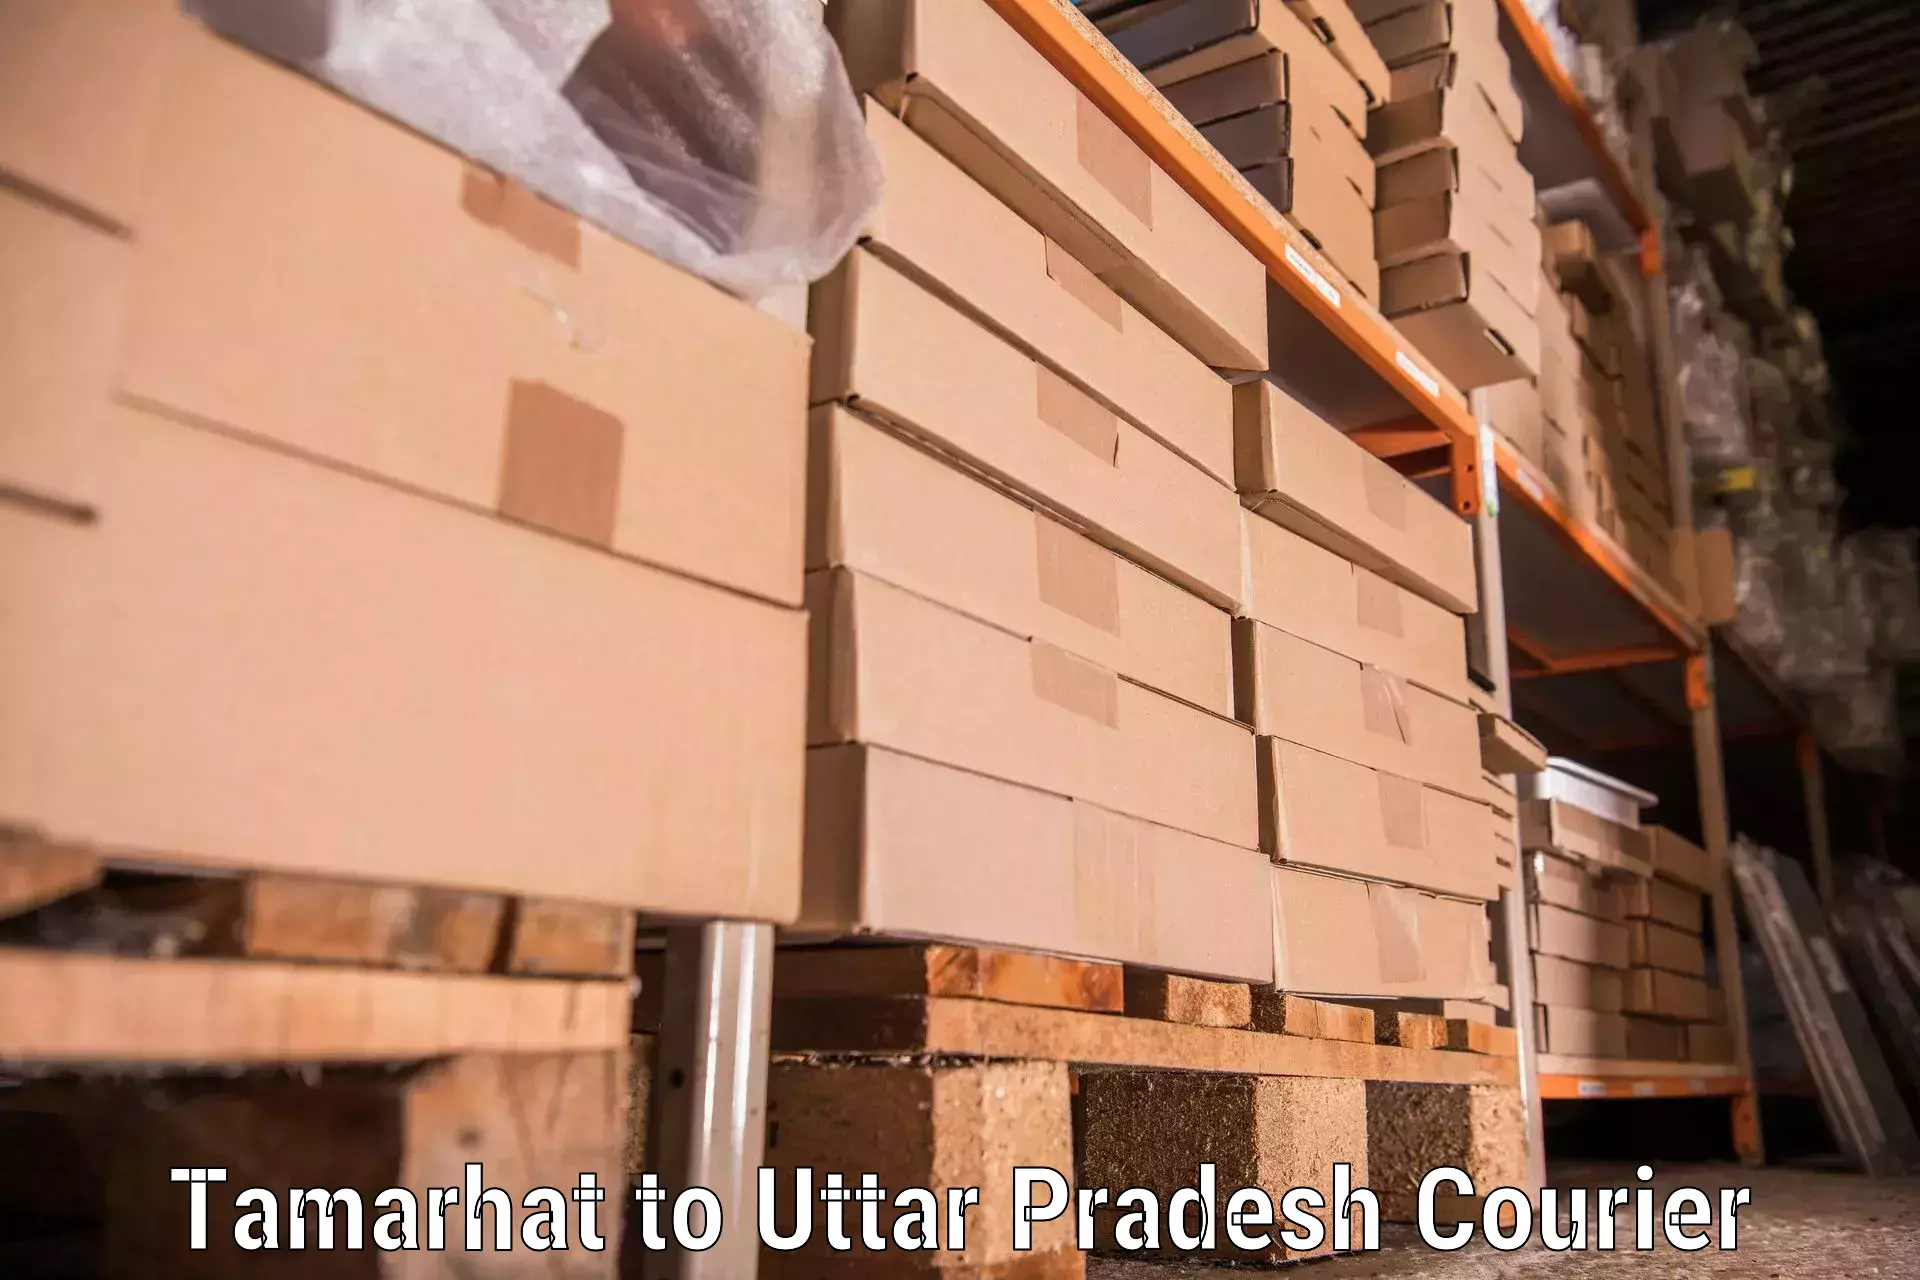 Furniture transport service Tamarhat to Pratapgarh